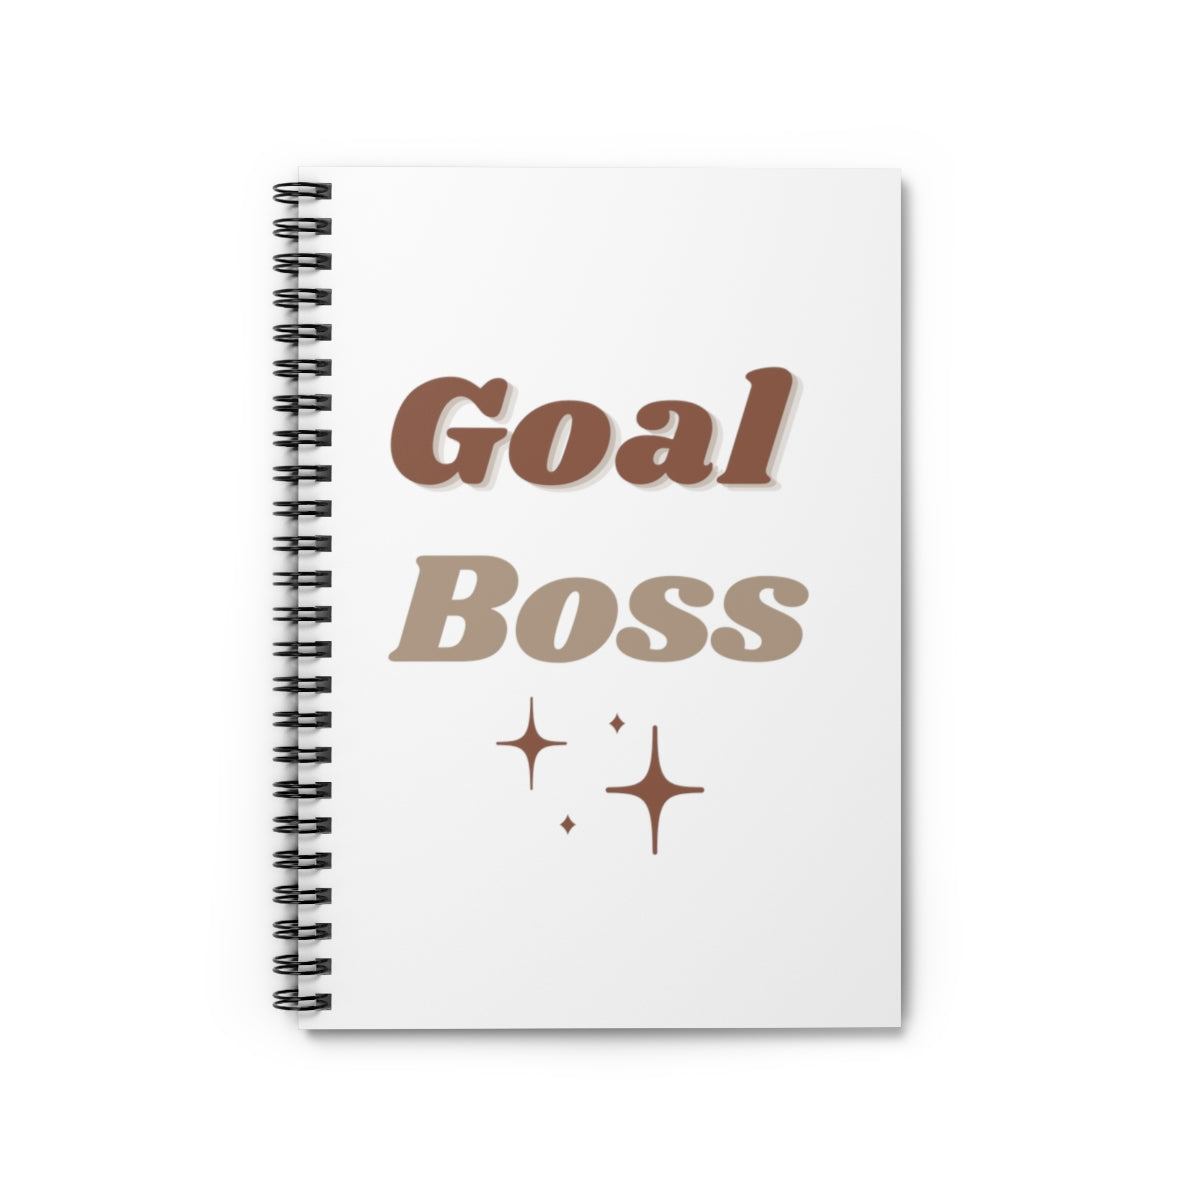 Goal Boss Motivational Durable Journal- Motivational Notebook, Inspirational Notebooks, Women’s Inspirational Journal, Self-Care Gift for Friends, Daily Motivational Journal